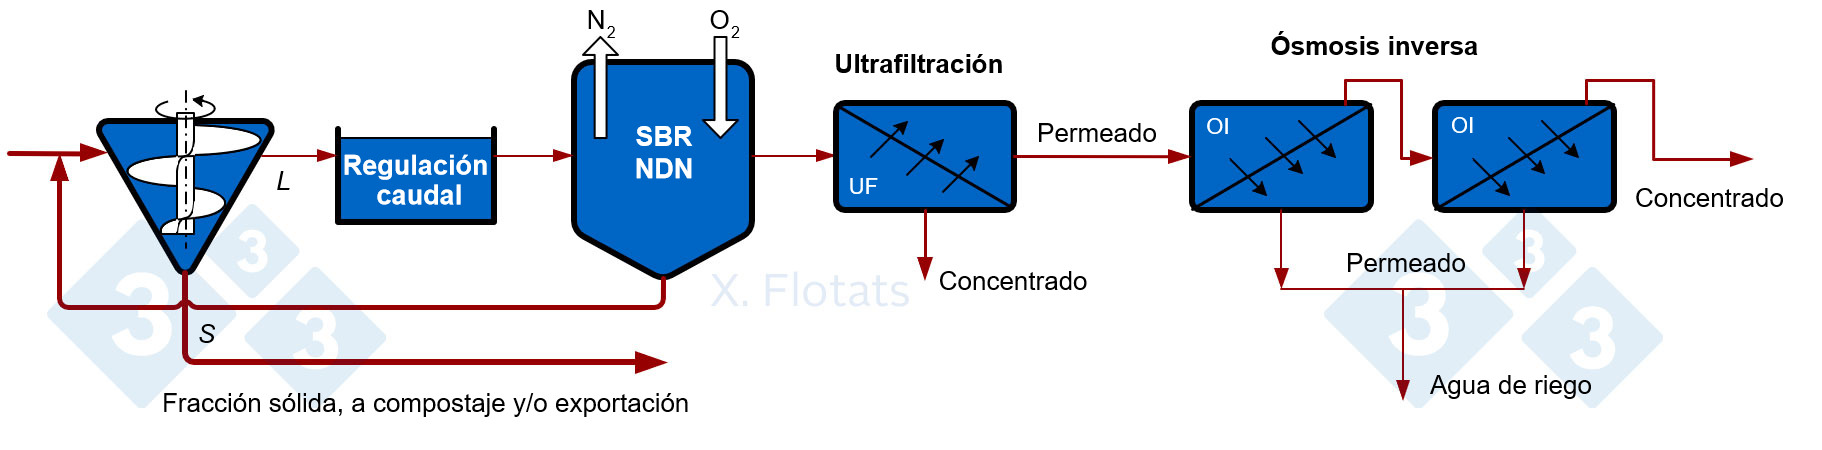 <p>Figura 5. Esquema de un sistema combinado NDN, utilizando reactor SBR, con filtraci&oacute;n por membrana del efluente tratado, para exportaci&oacute;n de concentrados junto con la fracci&oacute;n s&oacute;lida, compostada o no.</p>
